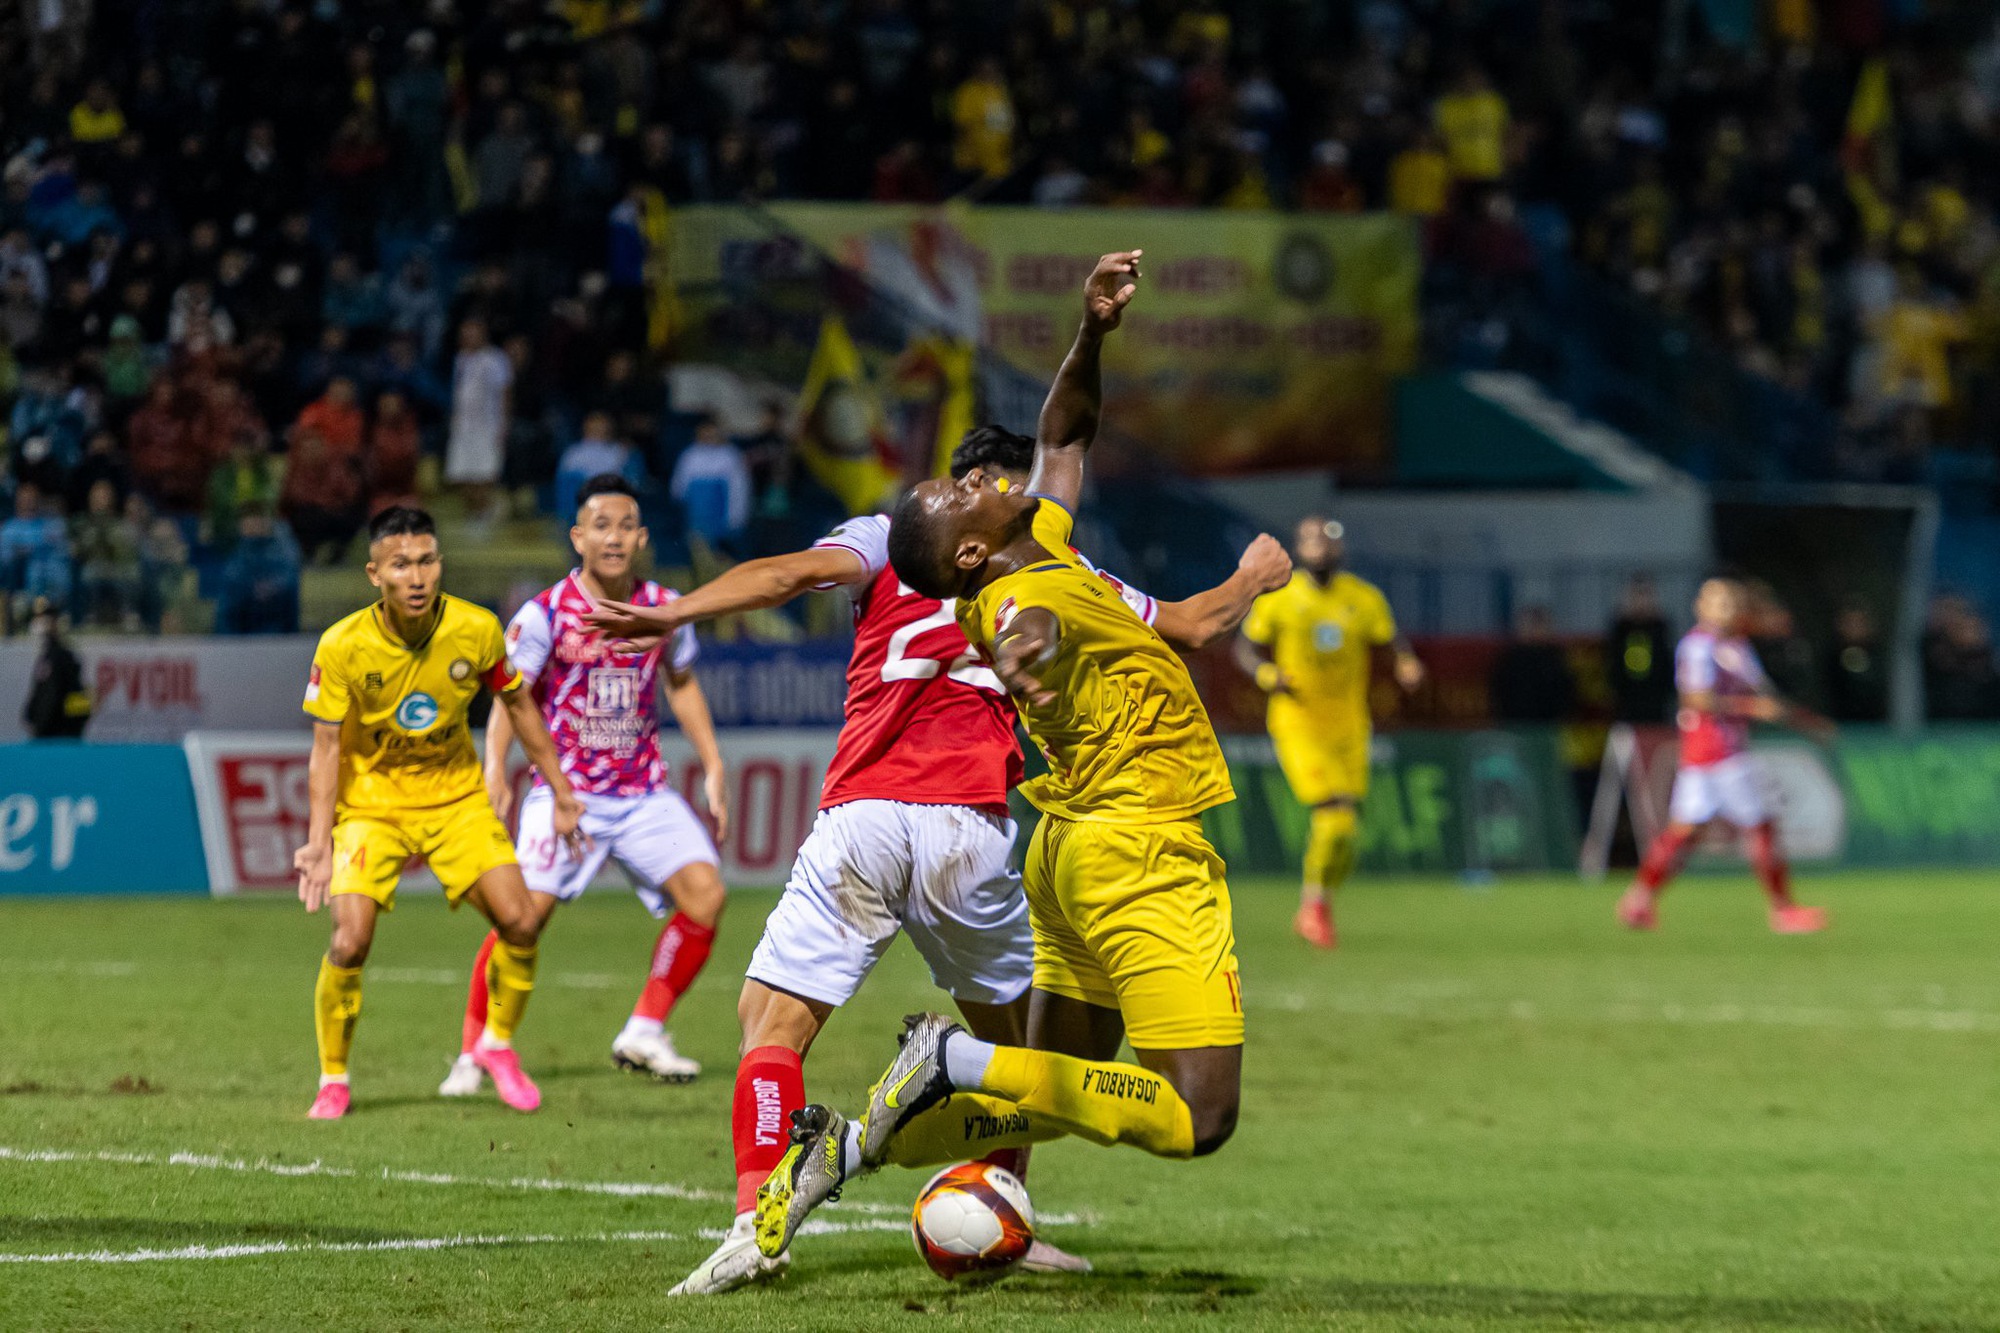 Đông Á Thanh Hoá chia điểm trên sân nhà với TP Hồ Chí Minh trong trận đấu thiếu người - Ảnh 3.